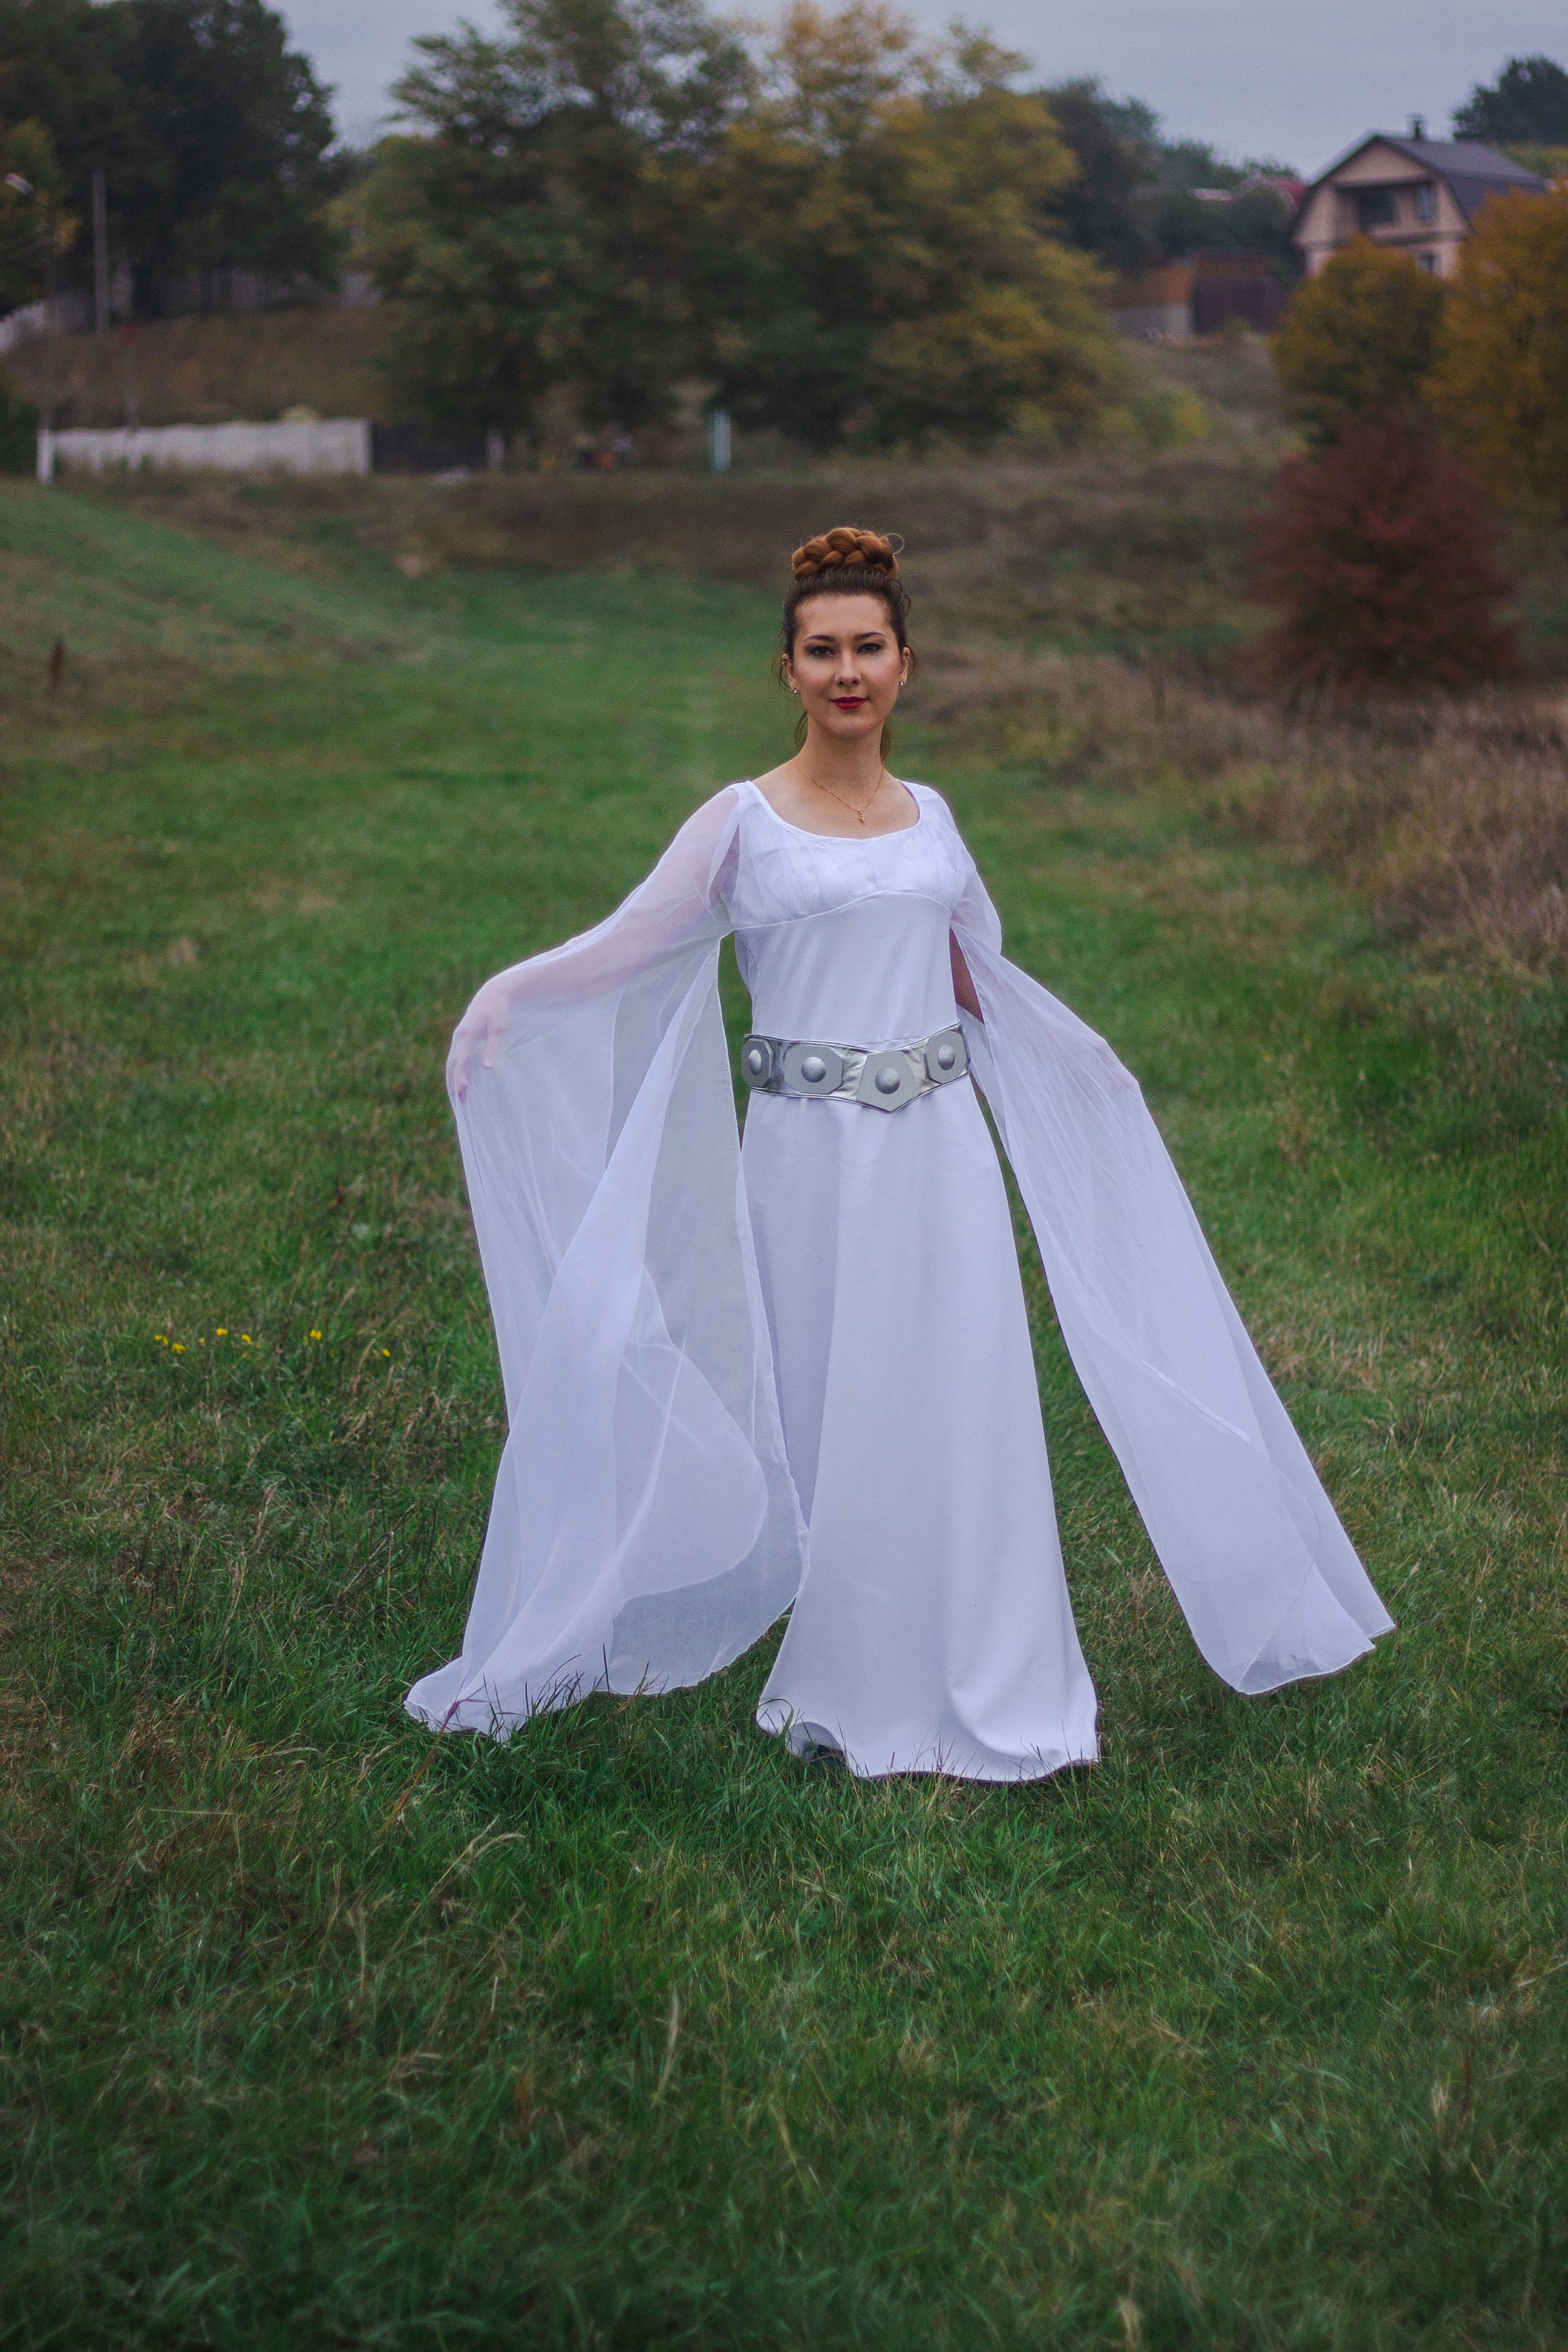 Kleding Meisjeskleding Verkleden Children's Princess Leia kostuum handgemaakt op bestelling in alle maten star wars kostuums en cosplay verzending wereldwijd 